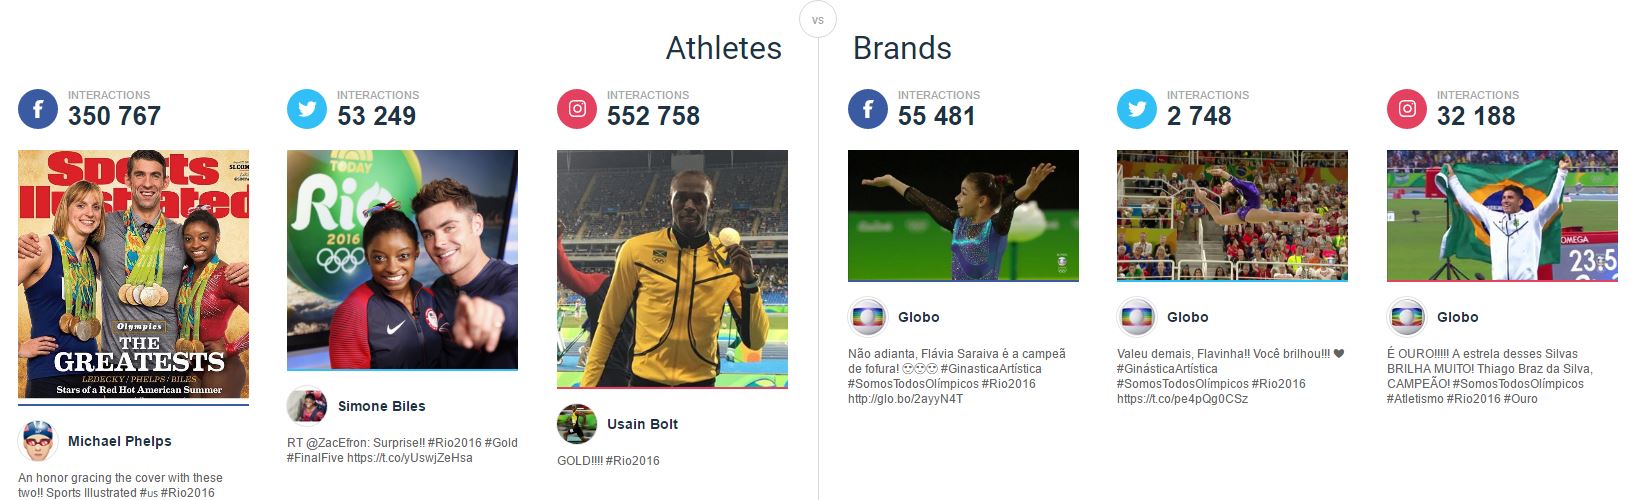 JO 2016 : Quelle est la marque et quel est l'athlète le plus plébiscité sur les réseaux sociaux?